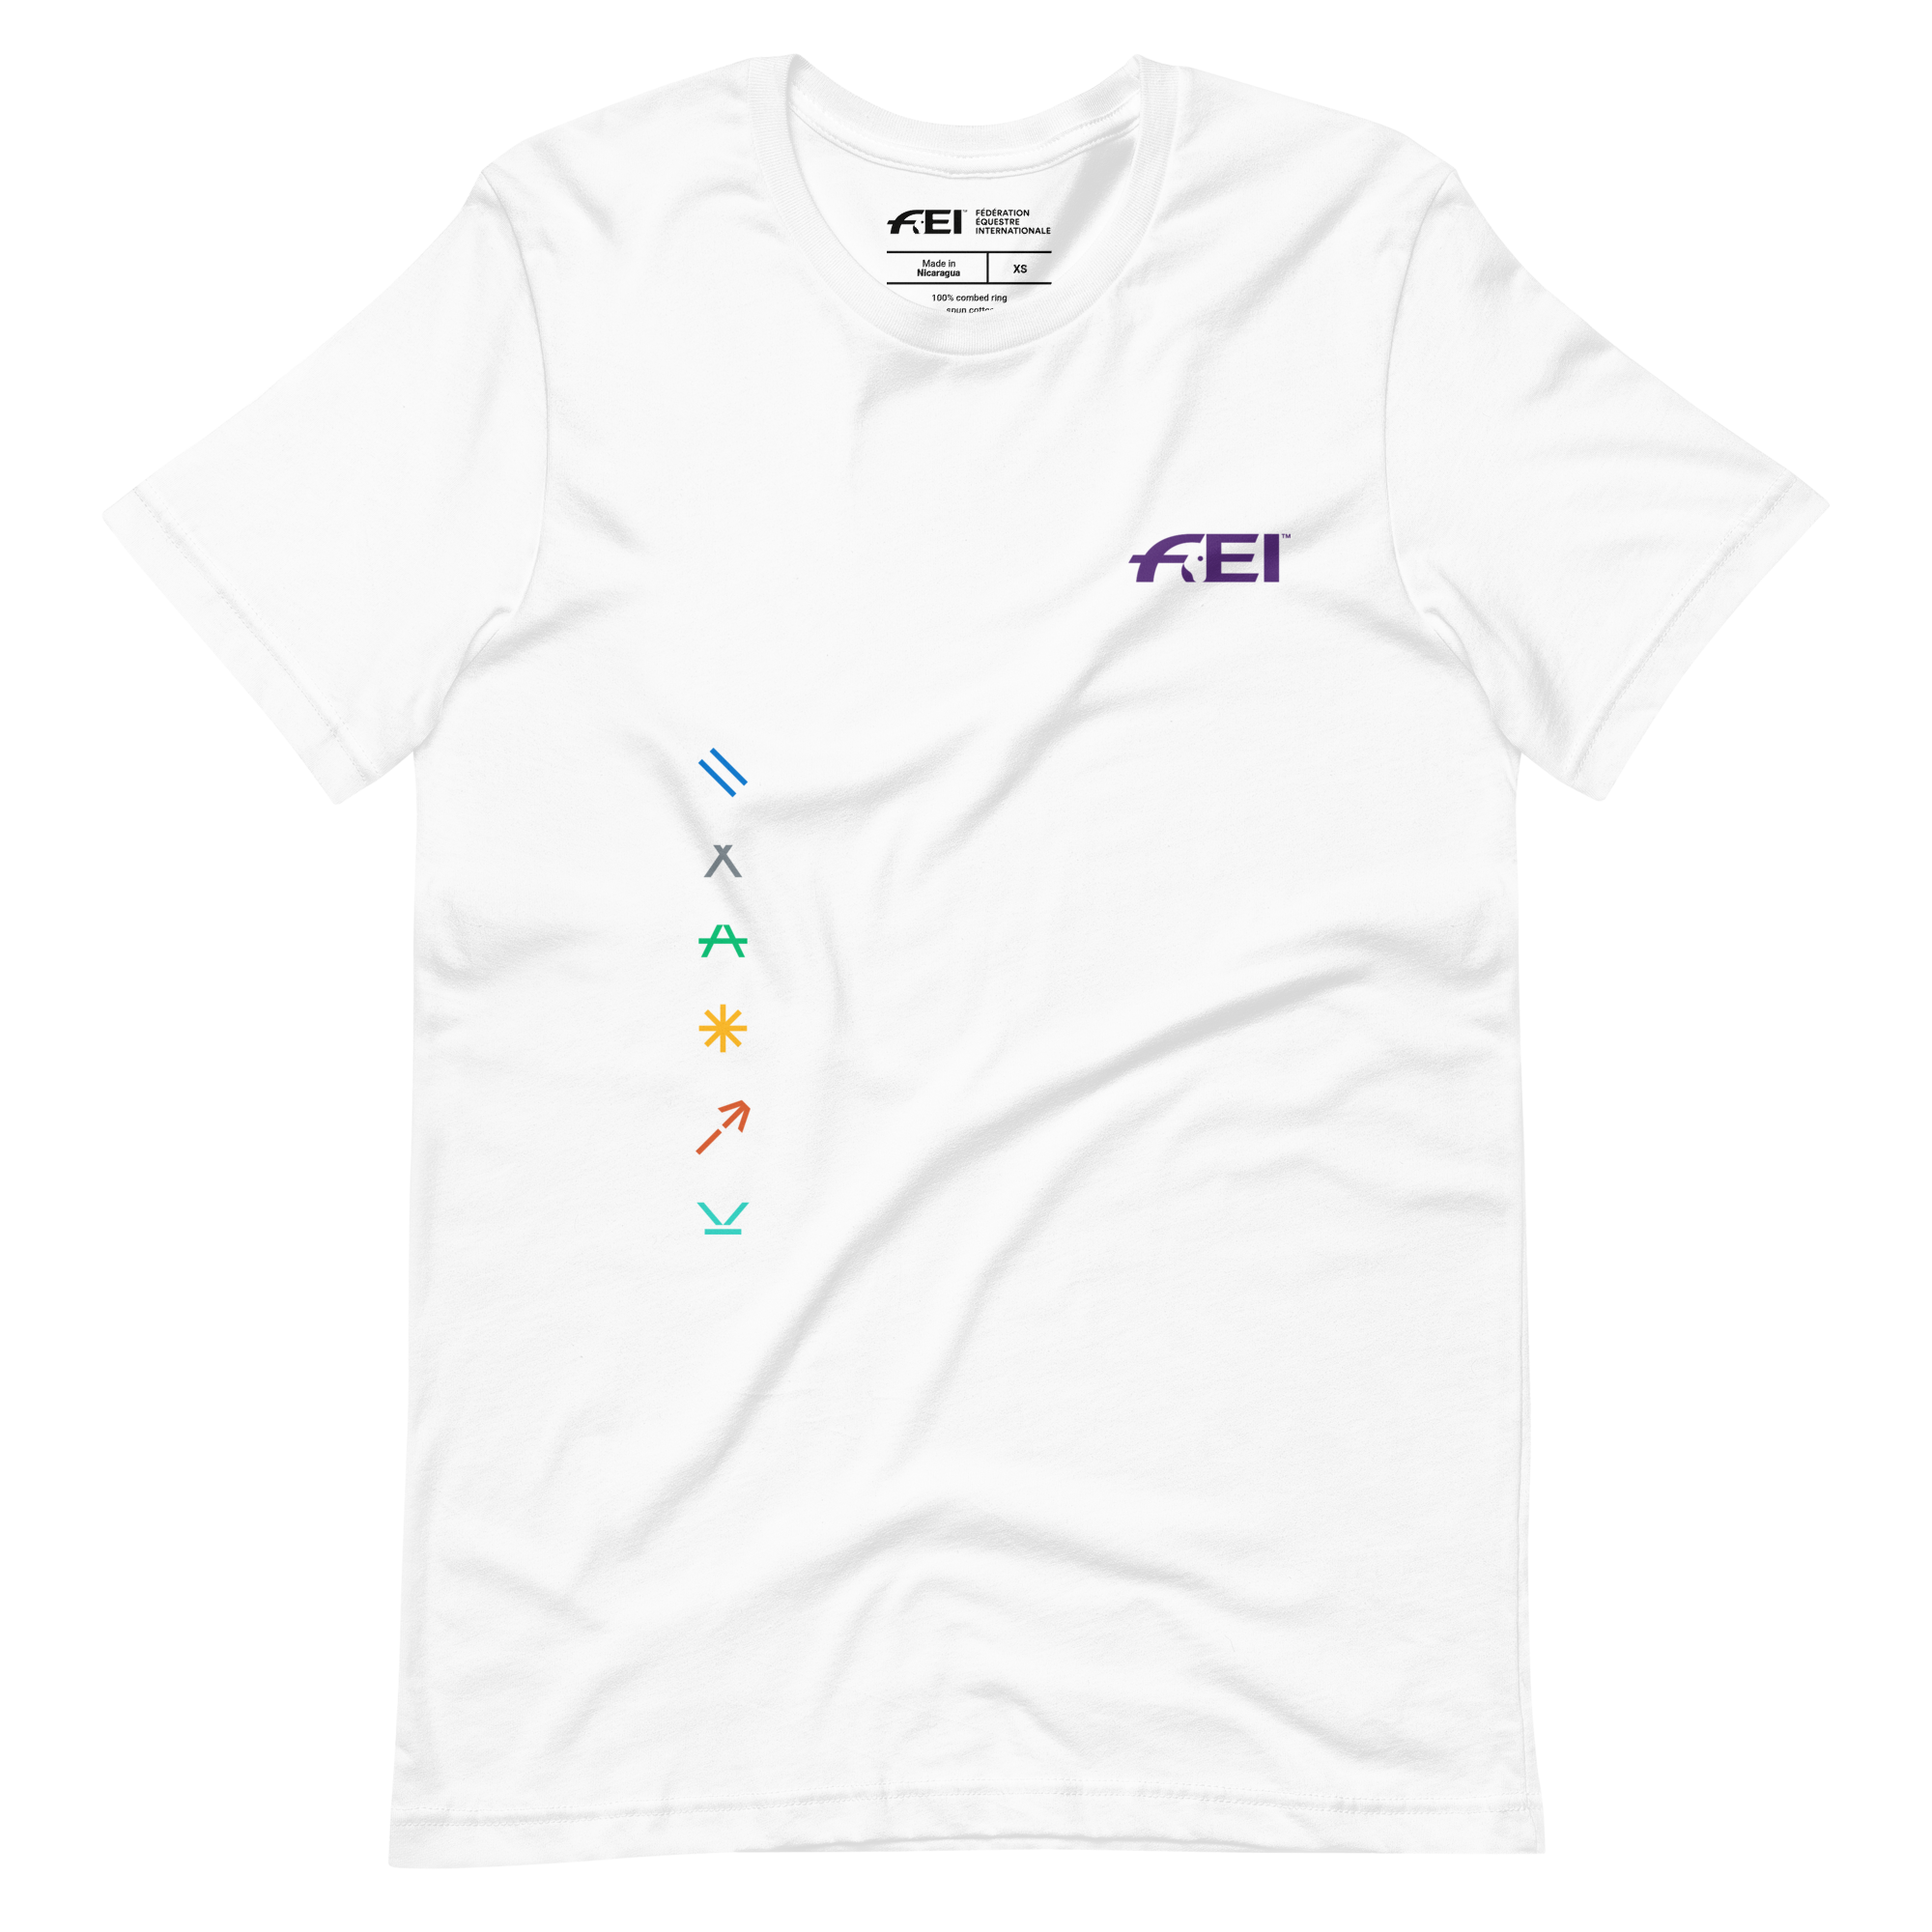 FEI Pictogram Unisex T-shirt FEI Official Store